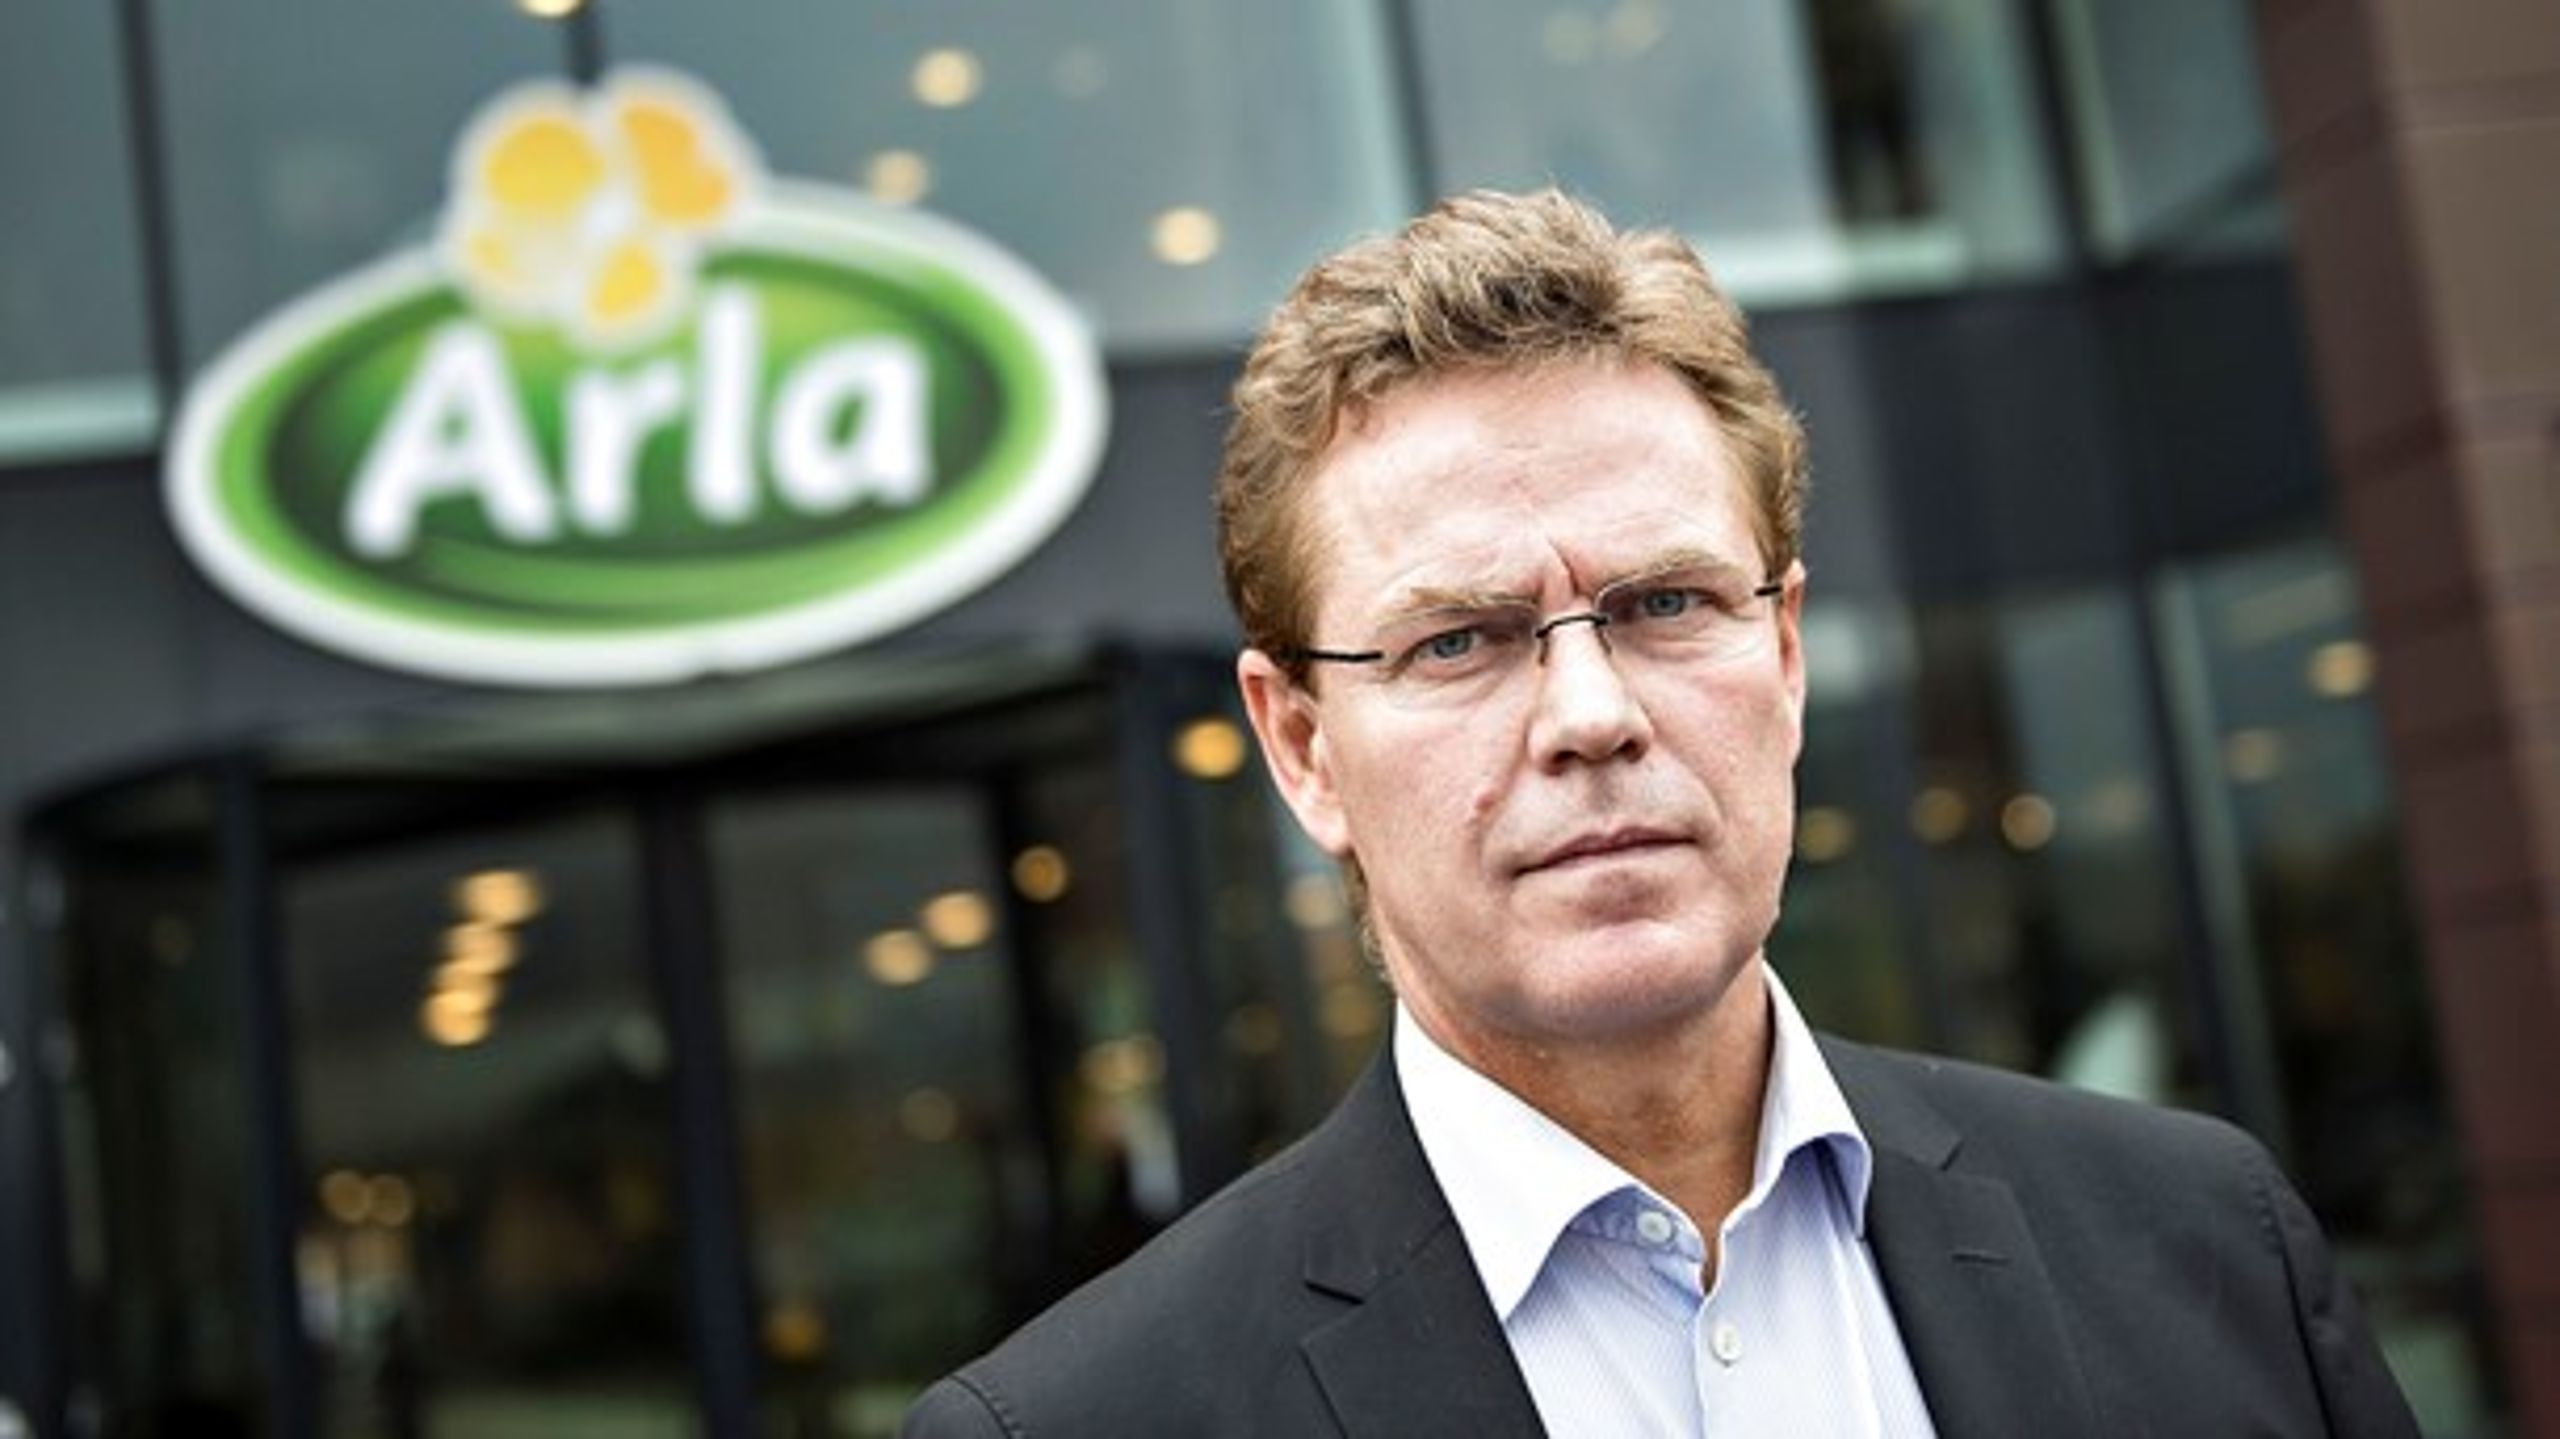 Arla tror på, at forbrugerne vil betale mere for bæredygtigt produceret mælk, lyder det fra administrerende direktør Peder Tuborgh.